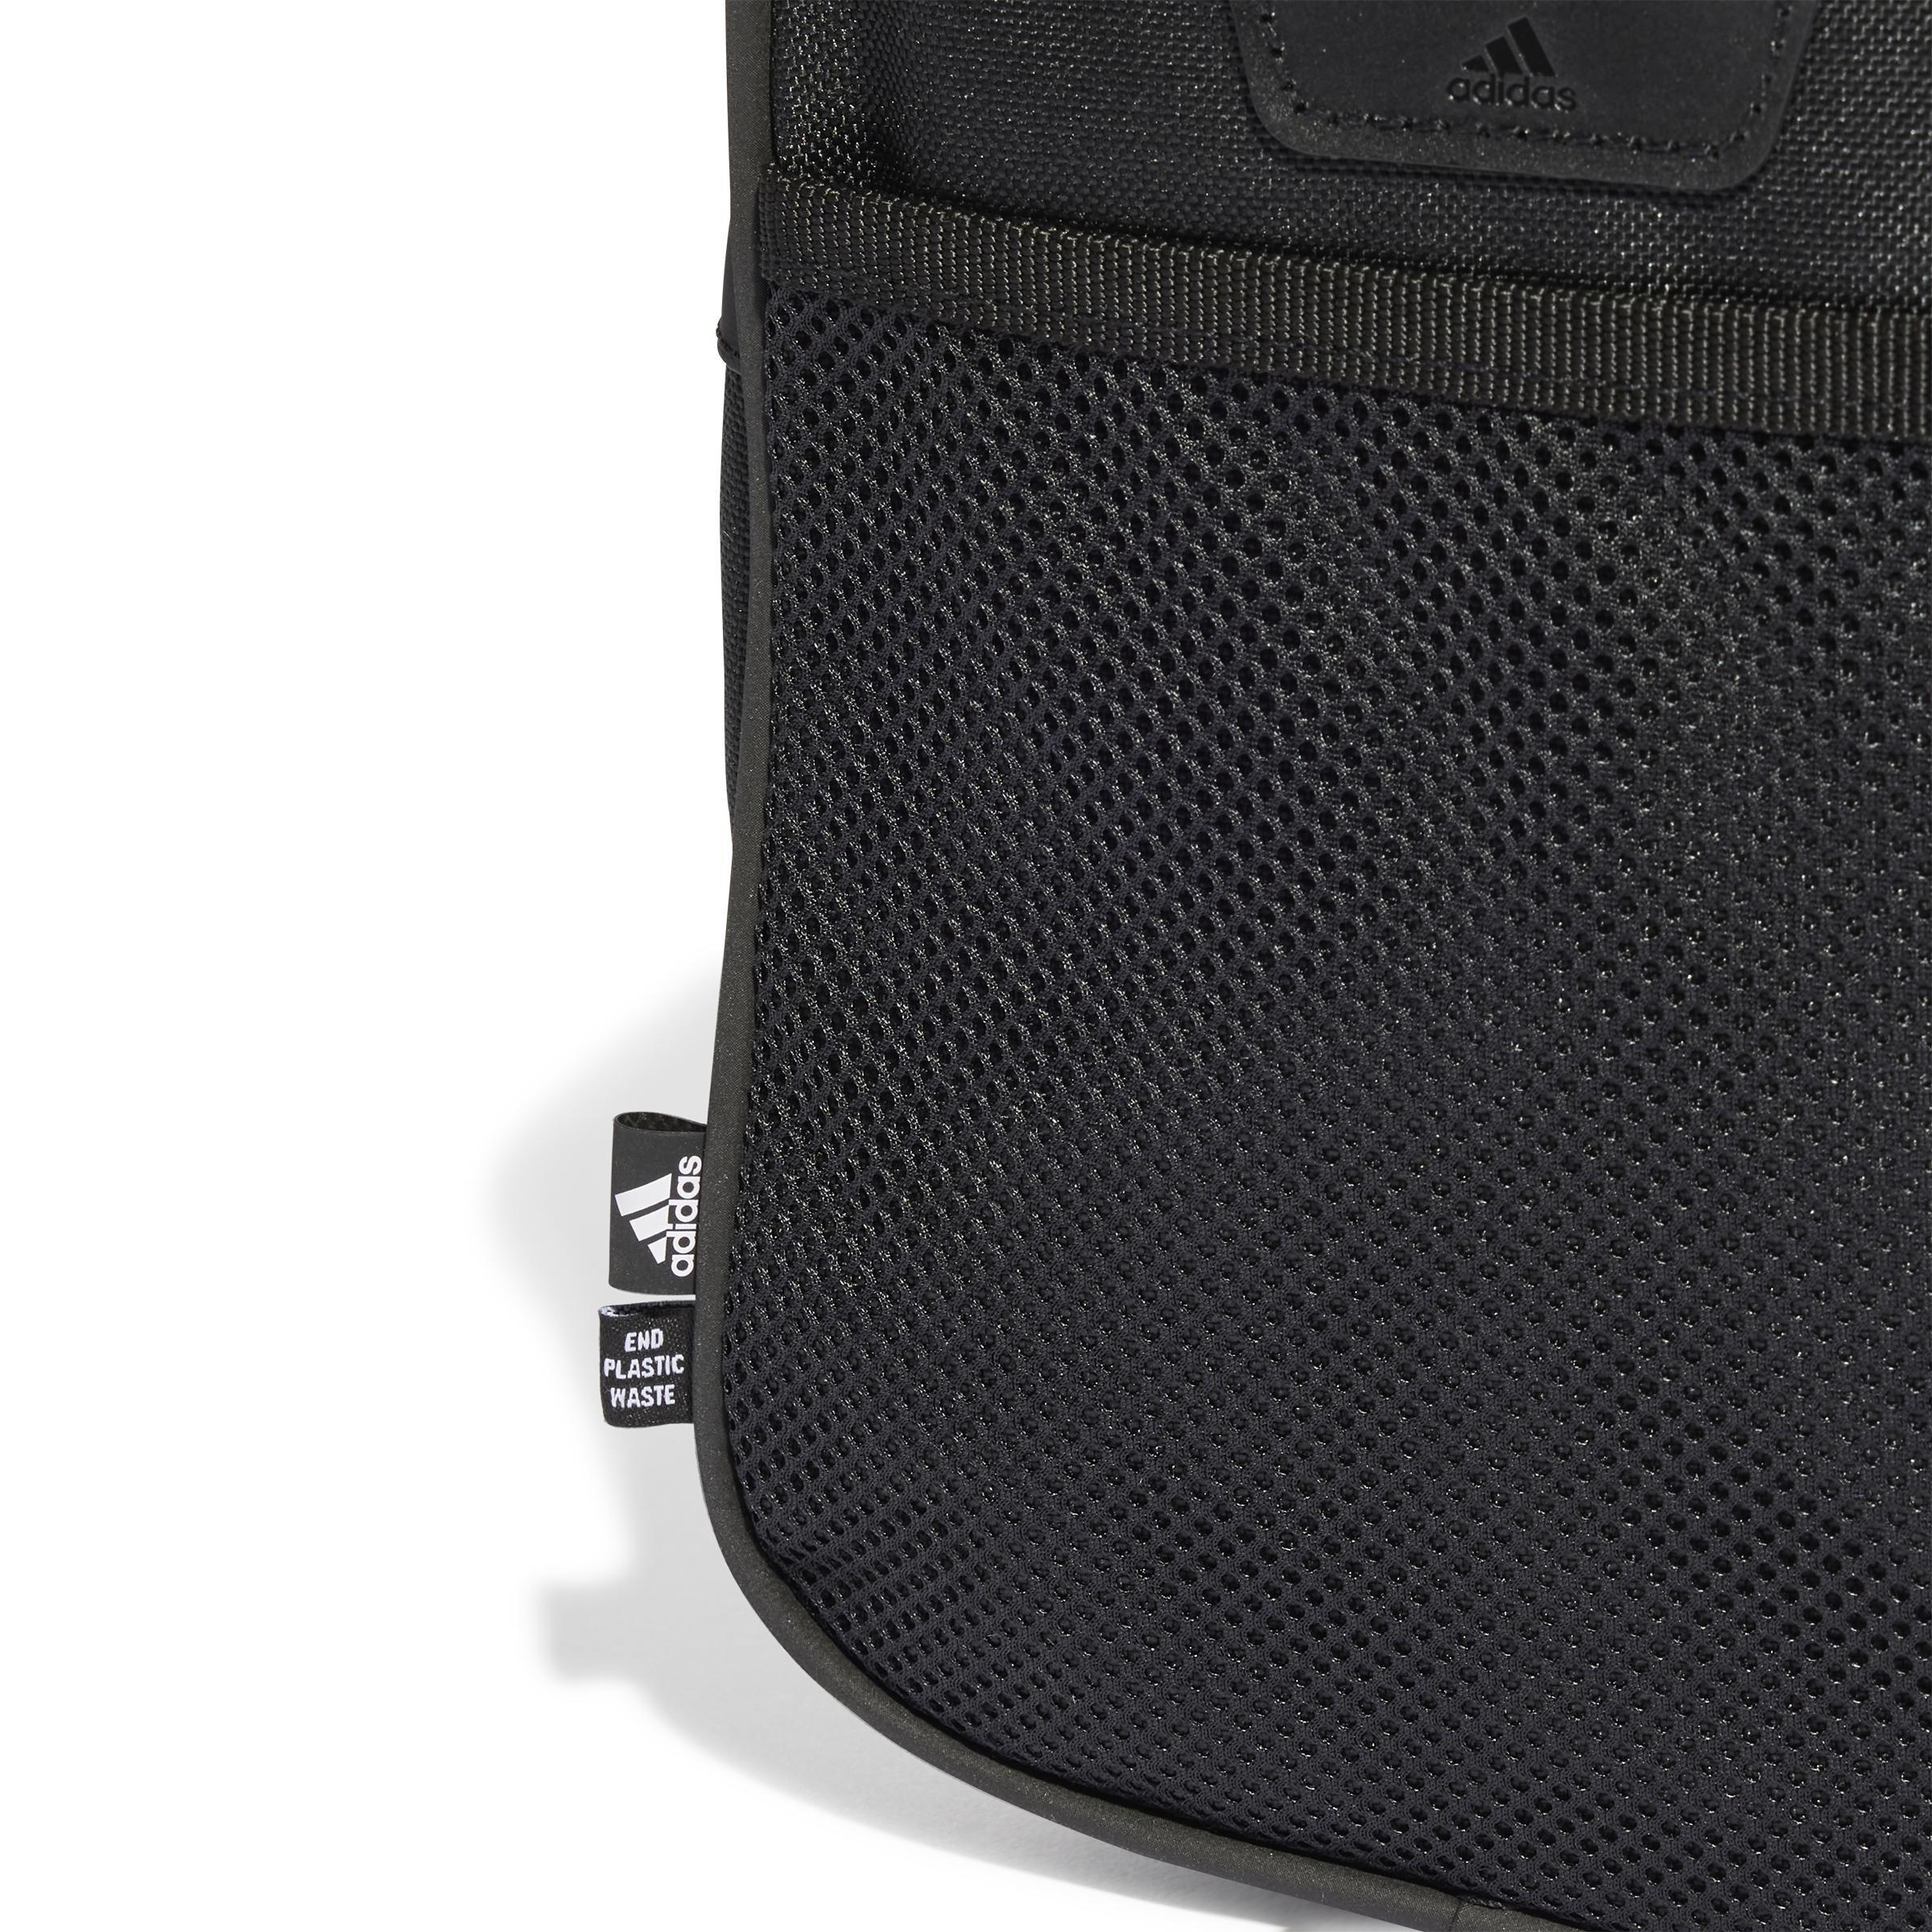 adidas - Unisex Essentials Linear Duffel Bag , Black